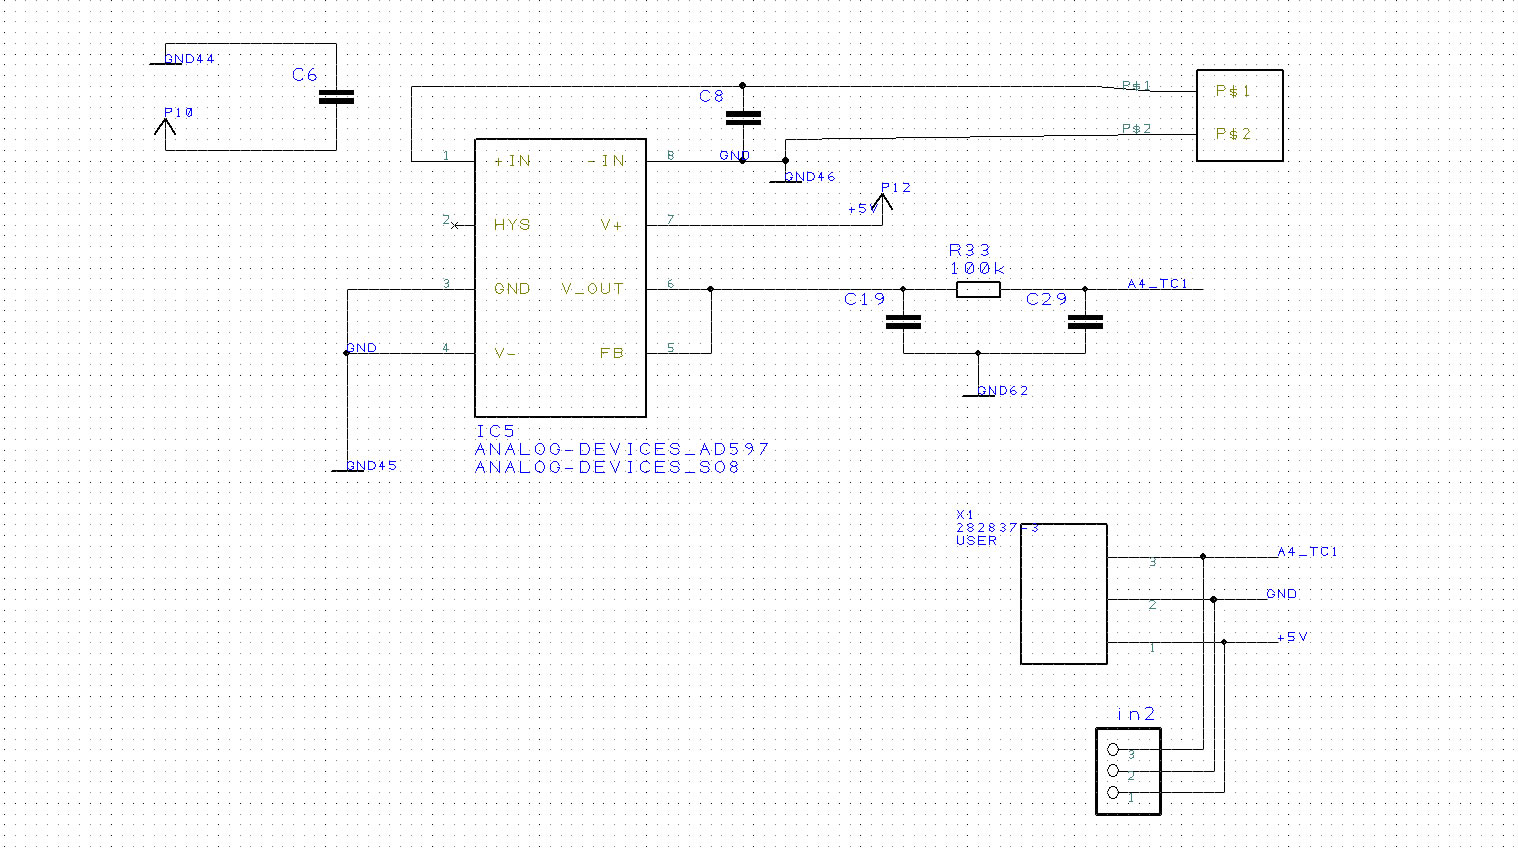 RepRap thermocouple AD597 adapter schematic.jpg